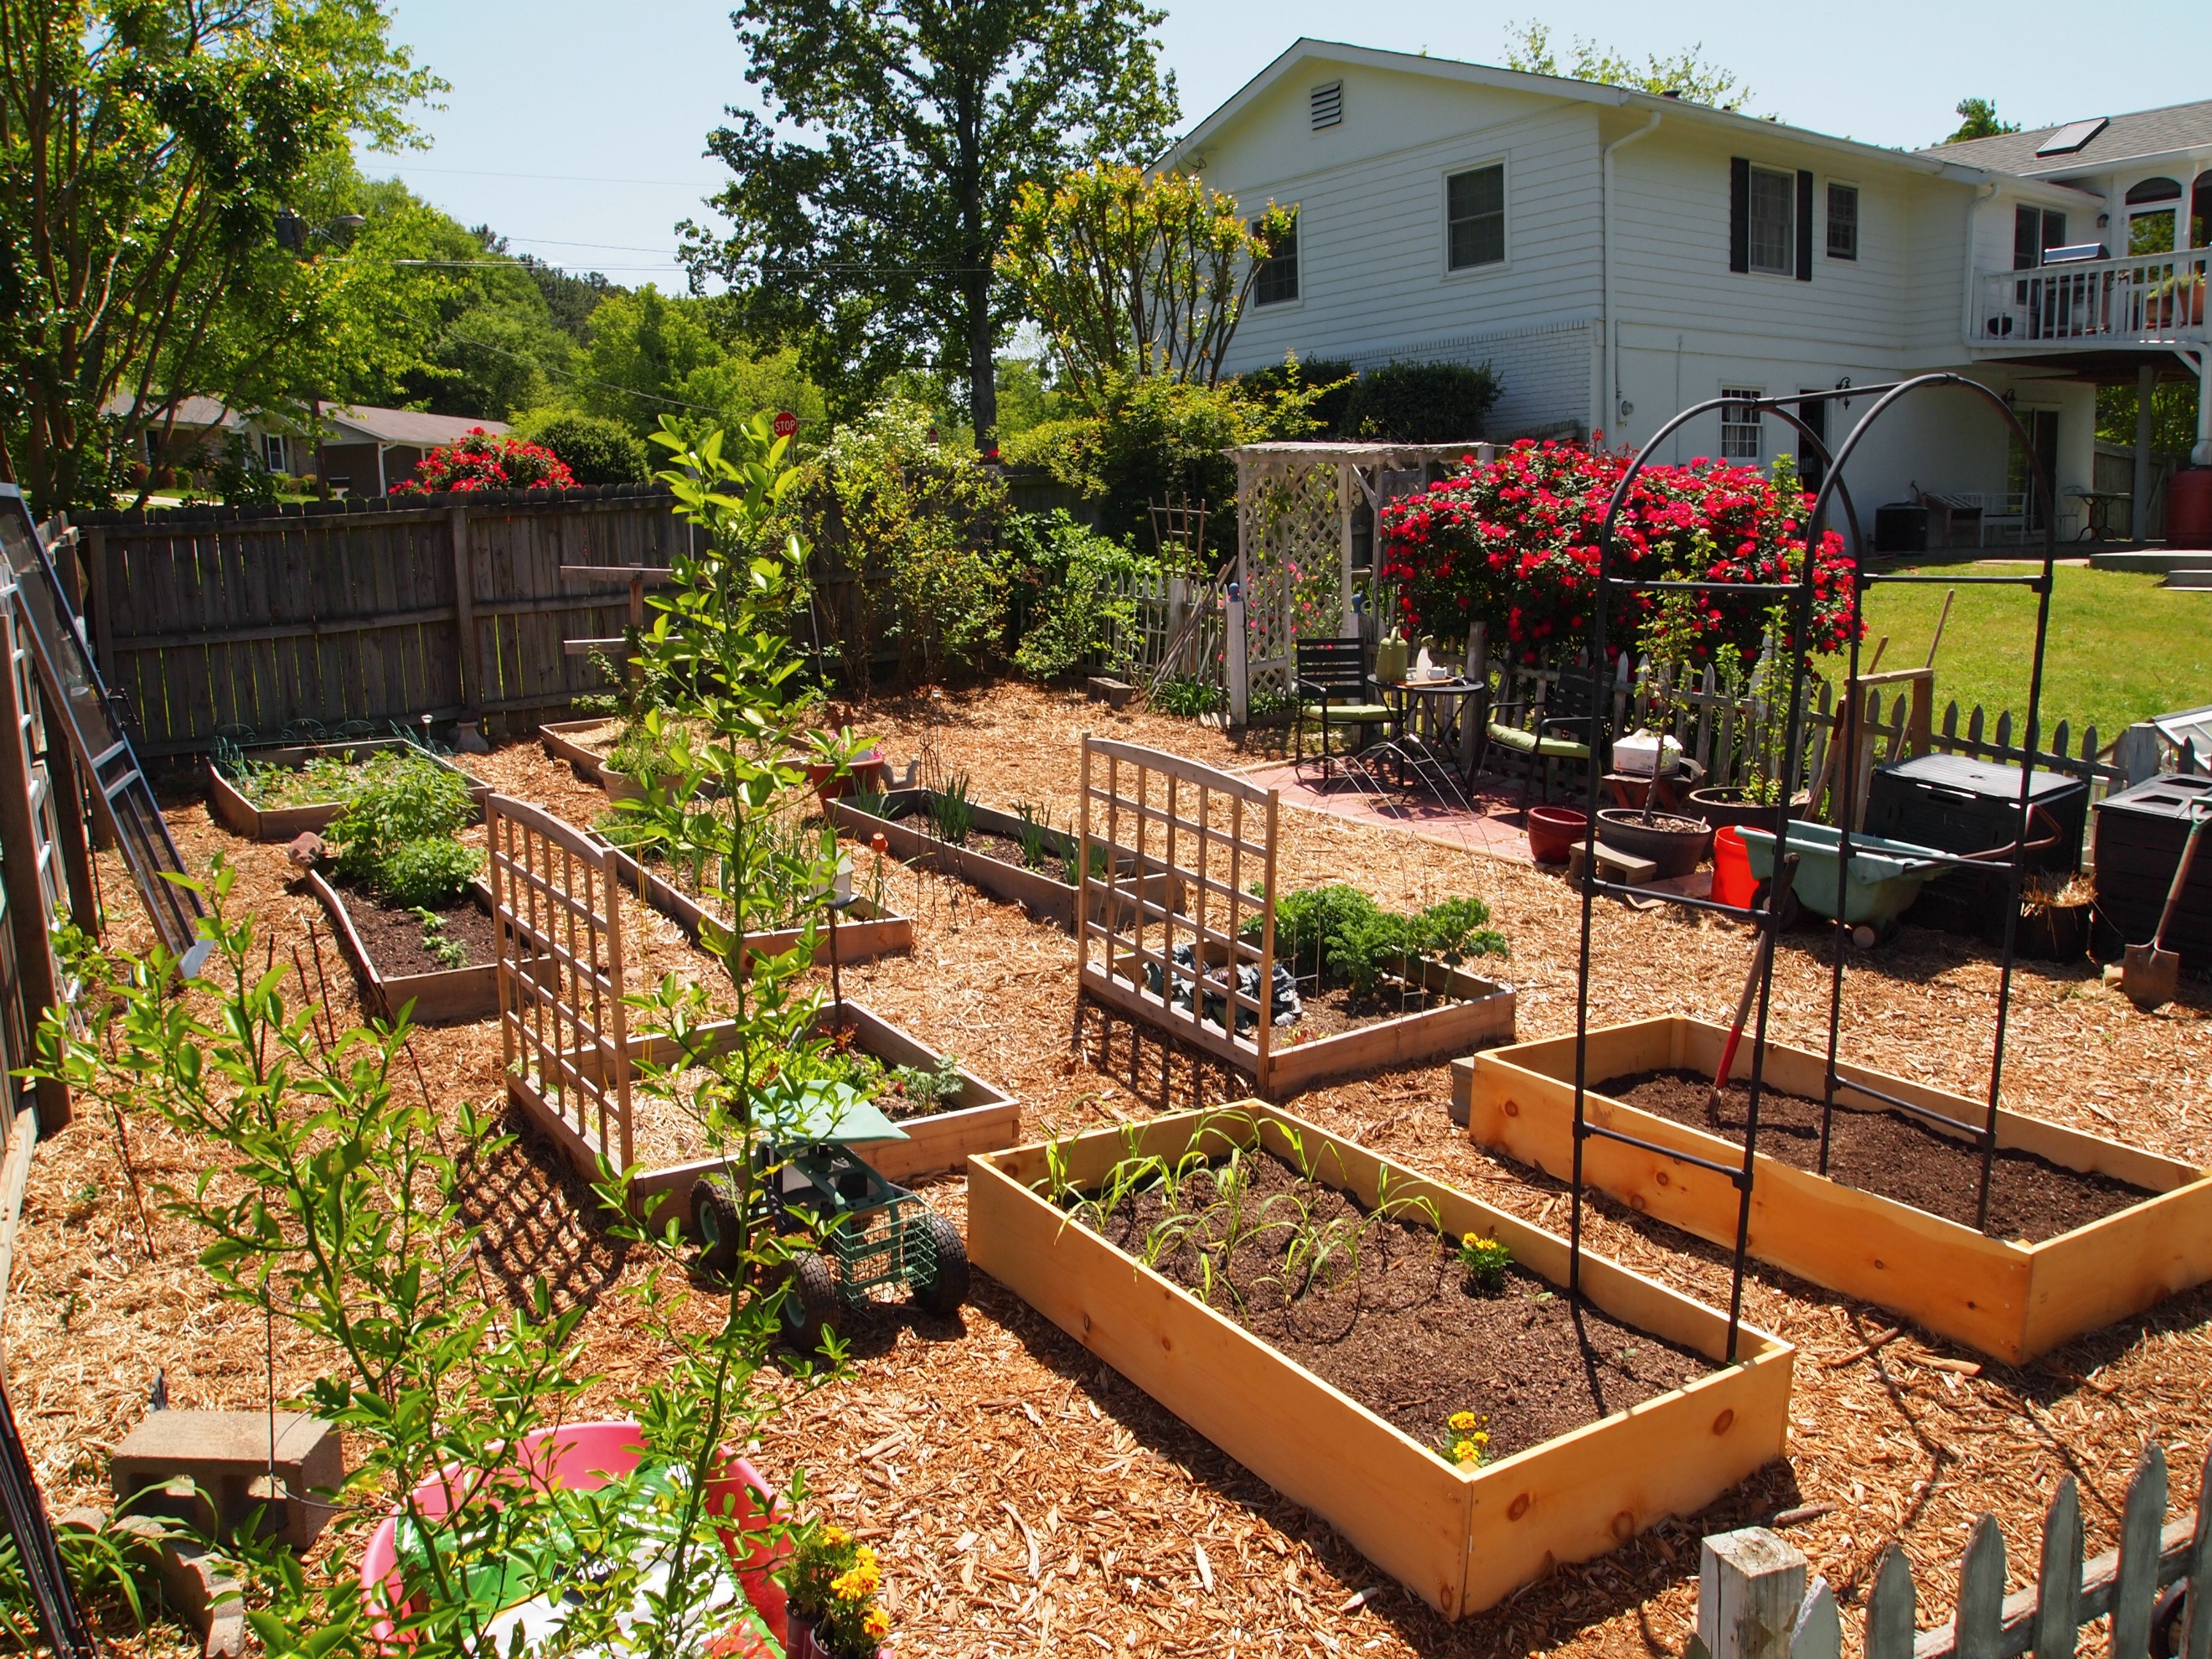  photos so you can get an idea of the vegetable garden layout so far